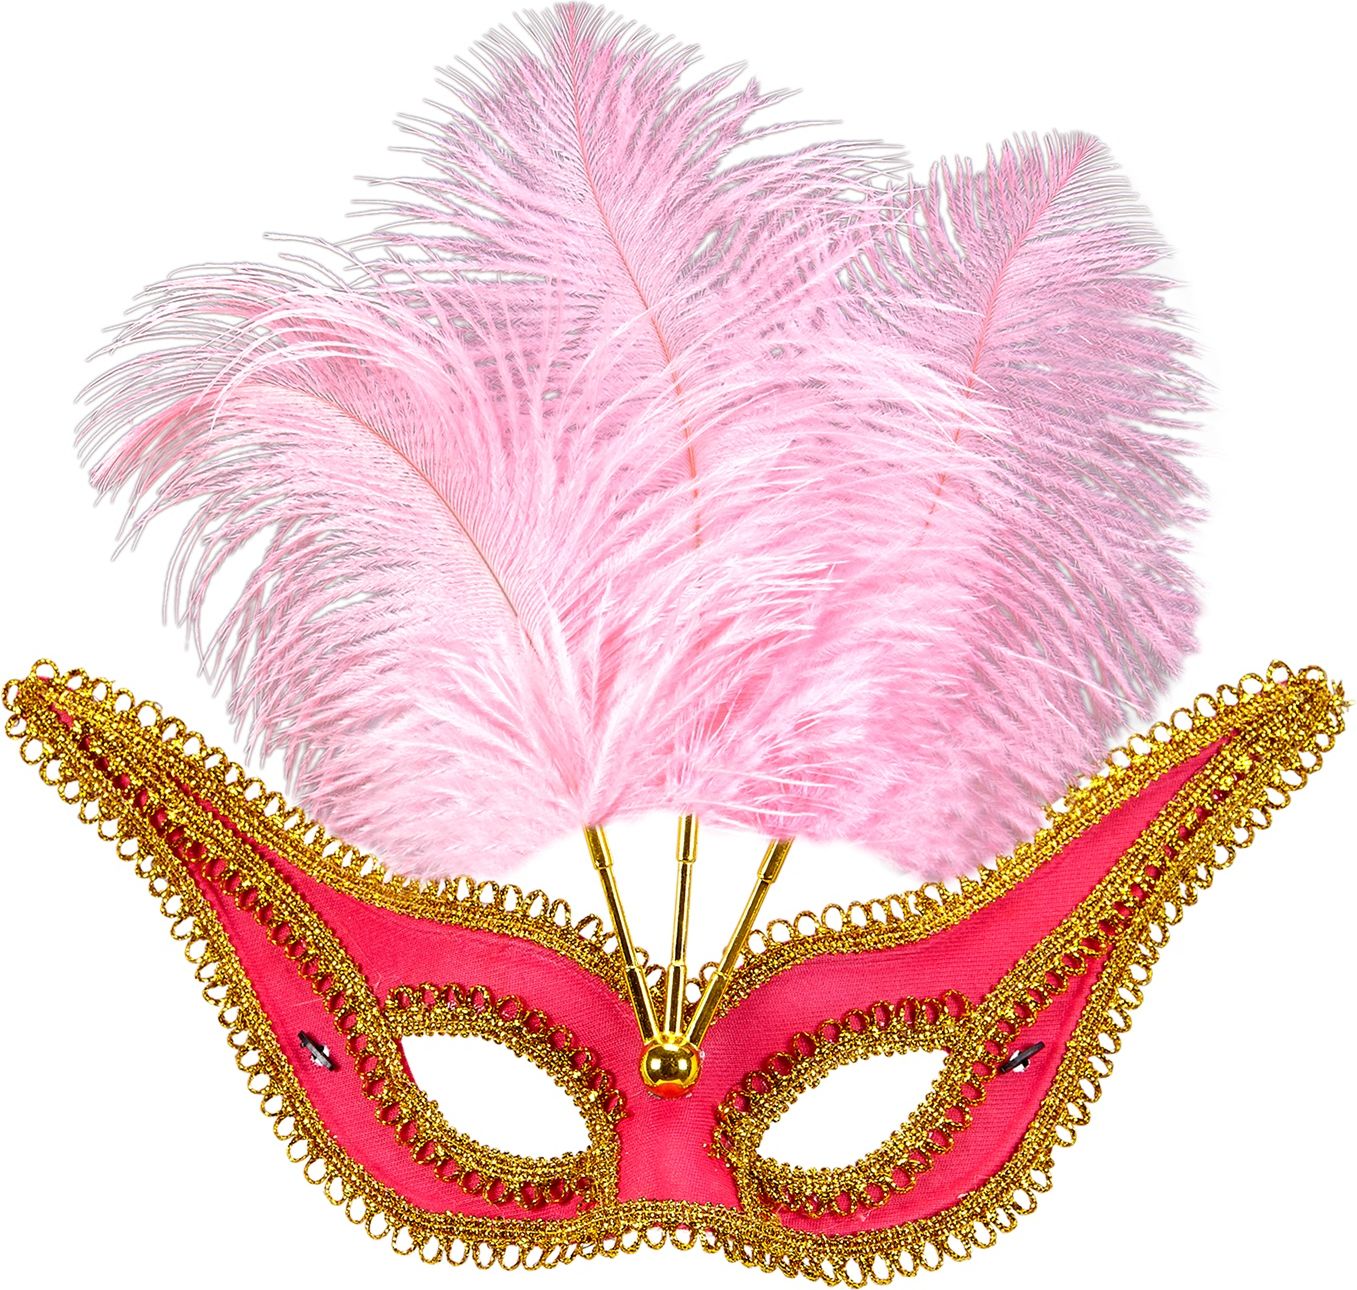 Roze oogmasker met veren en gouden rand